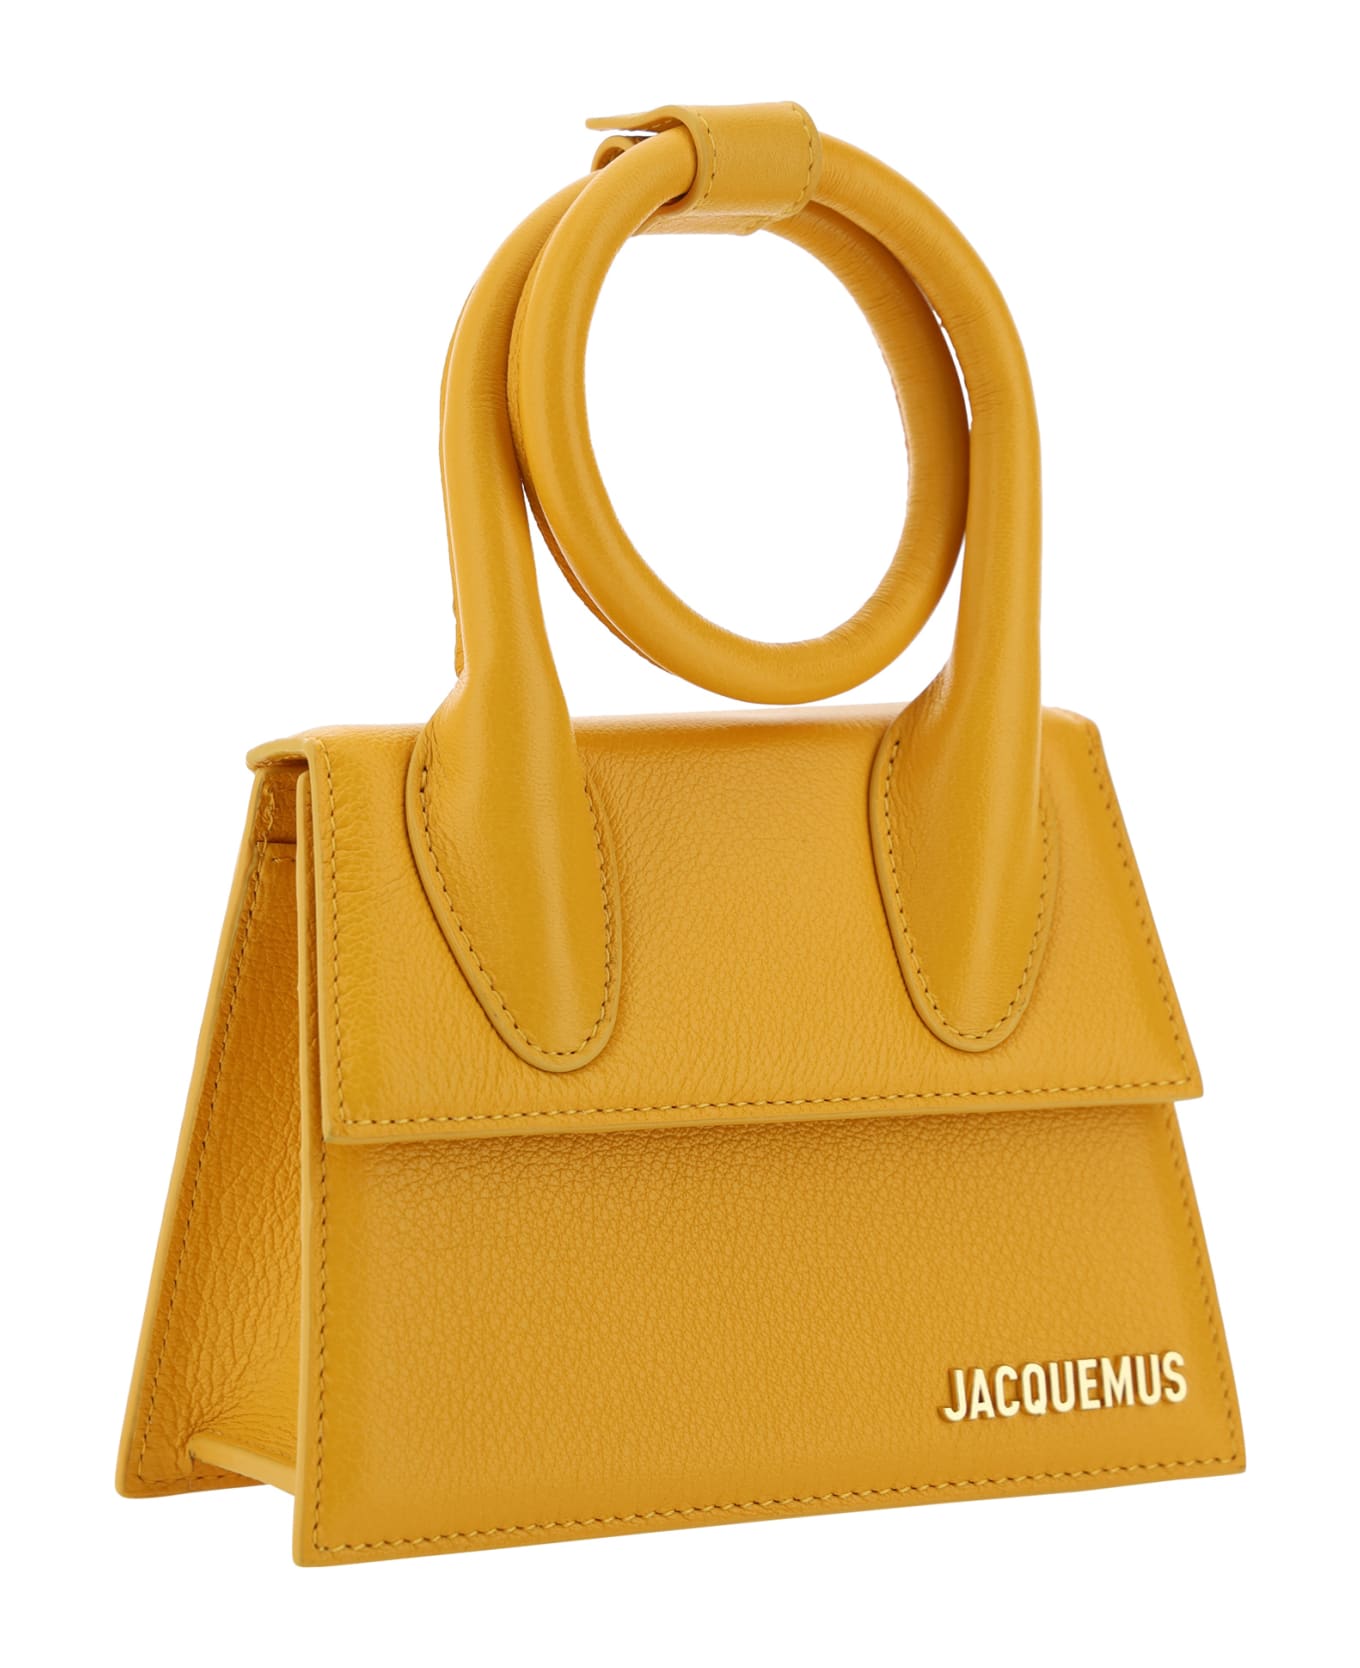 Jacquemus Le Chiquito N Ud Handbag - Dark Orange